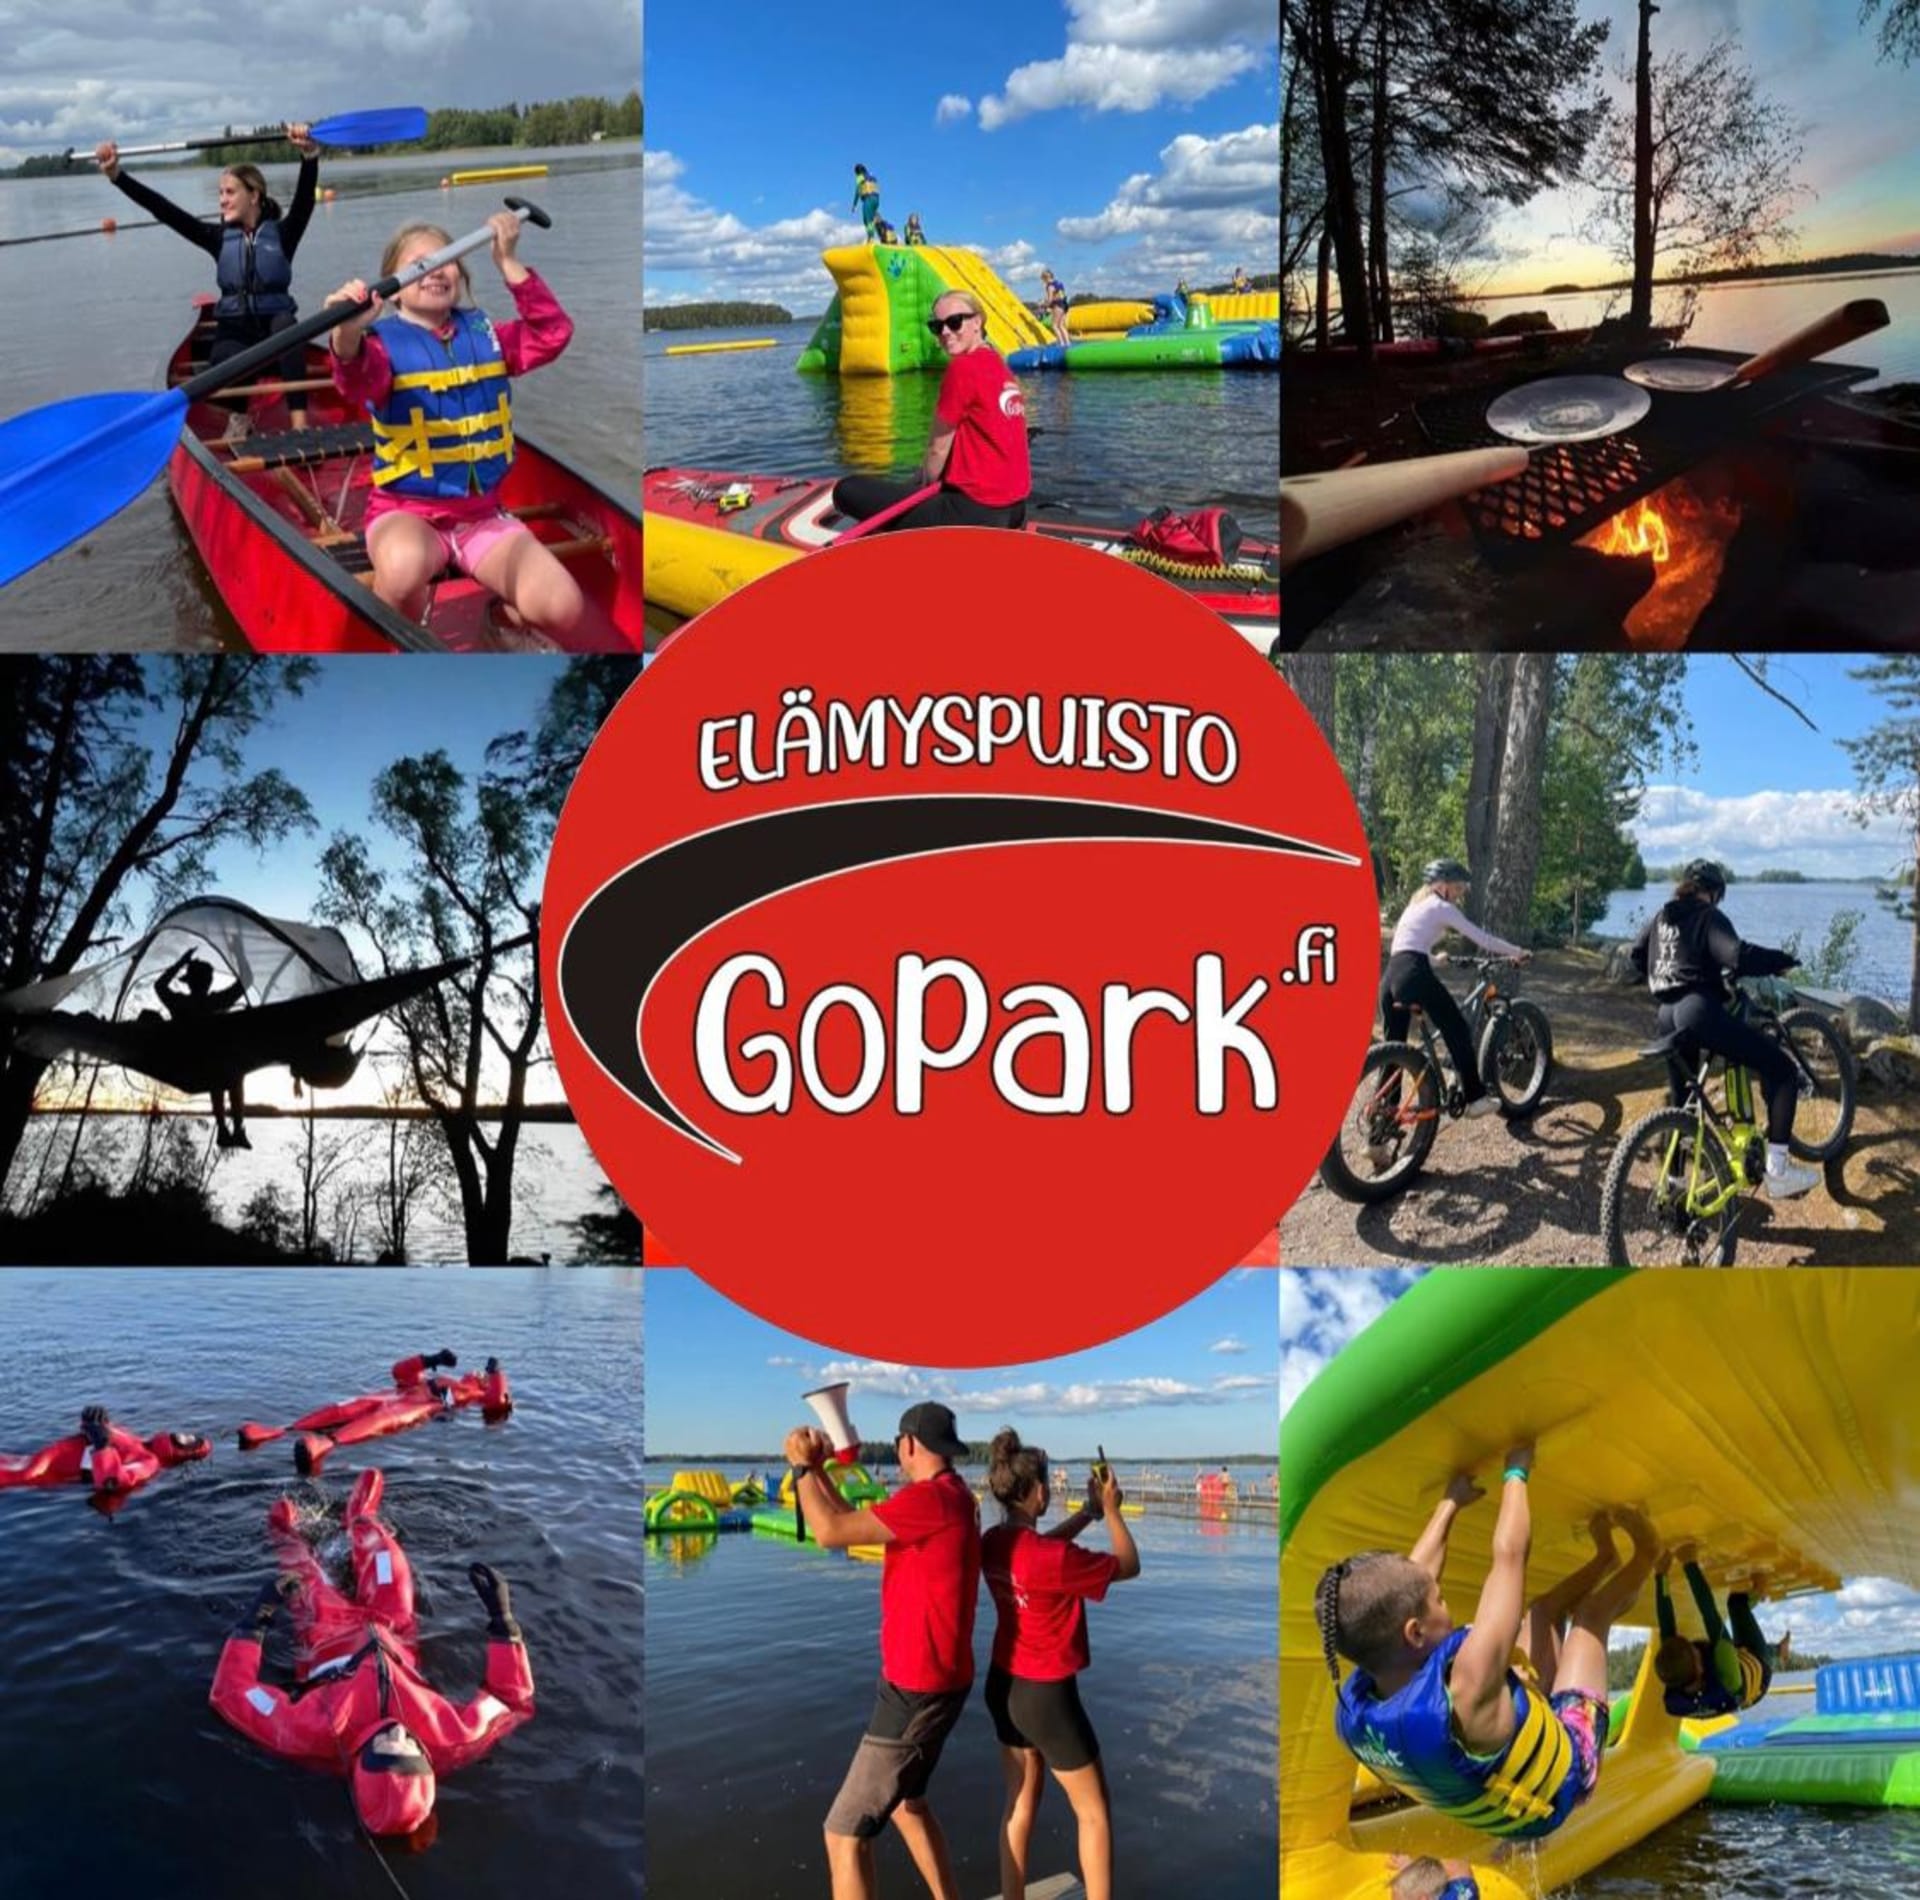 Experience park Gopark